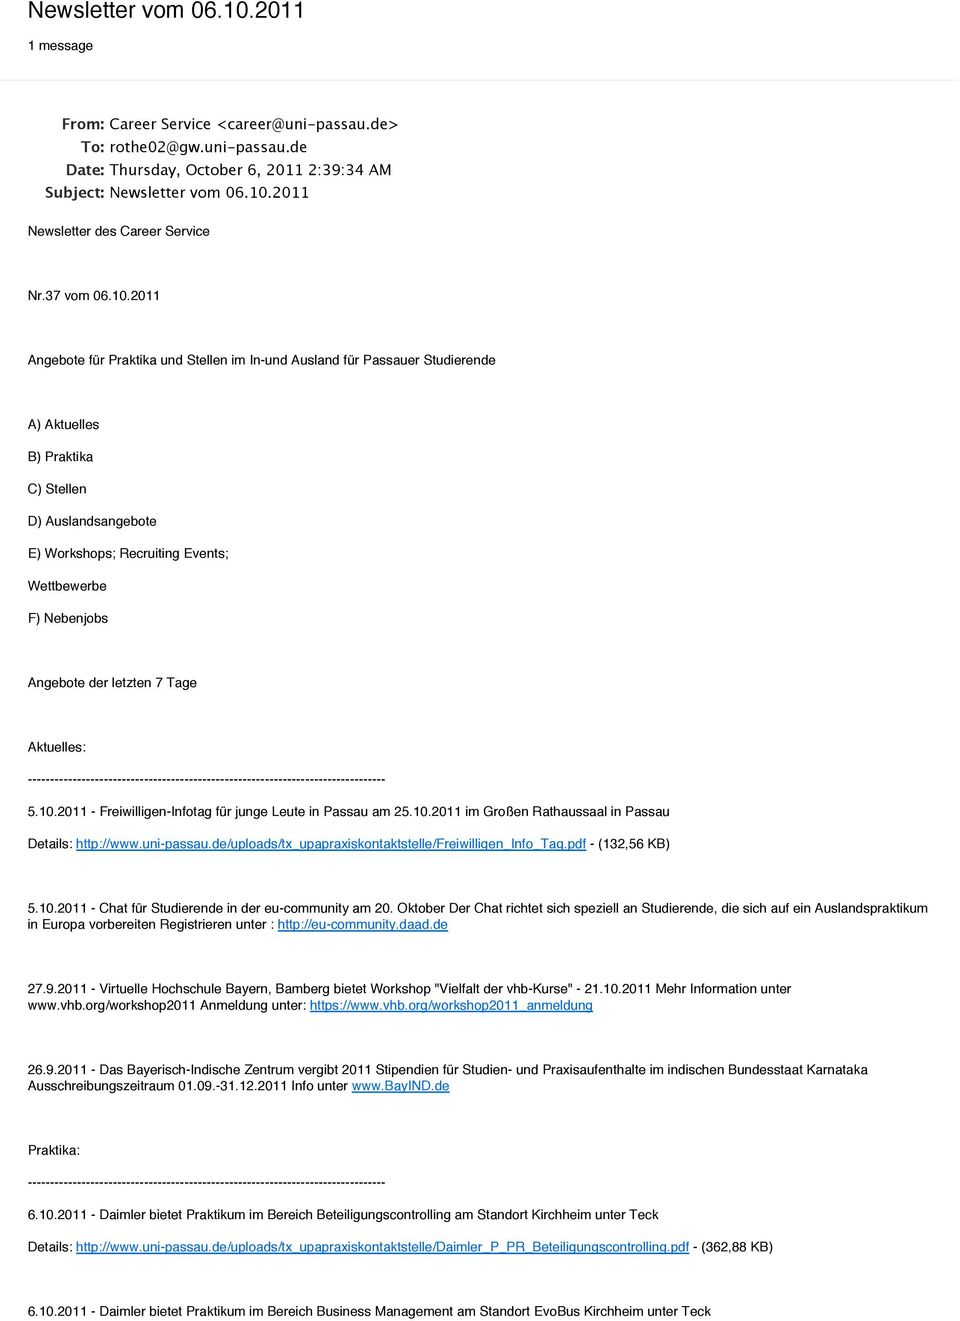 2011 Angebote für Praktika und Stellen im In-und Ausland für Passauer Studierende A) Aktuelles B) Praktika C) Stellen D) Auslandsangebote E) Workshops; Recruiting Events; Wettbewerbe F) Nebenjobs